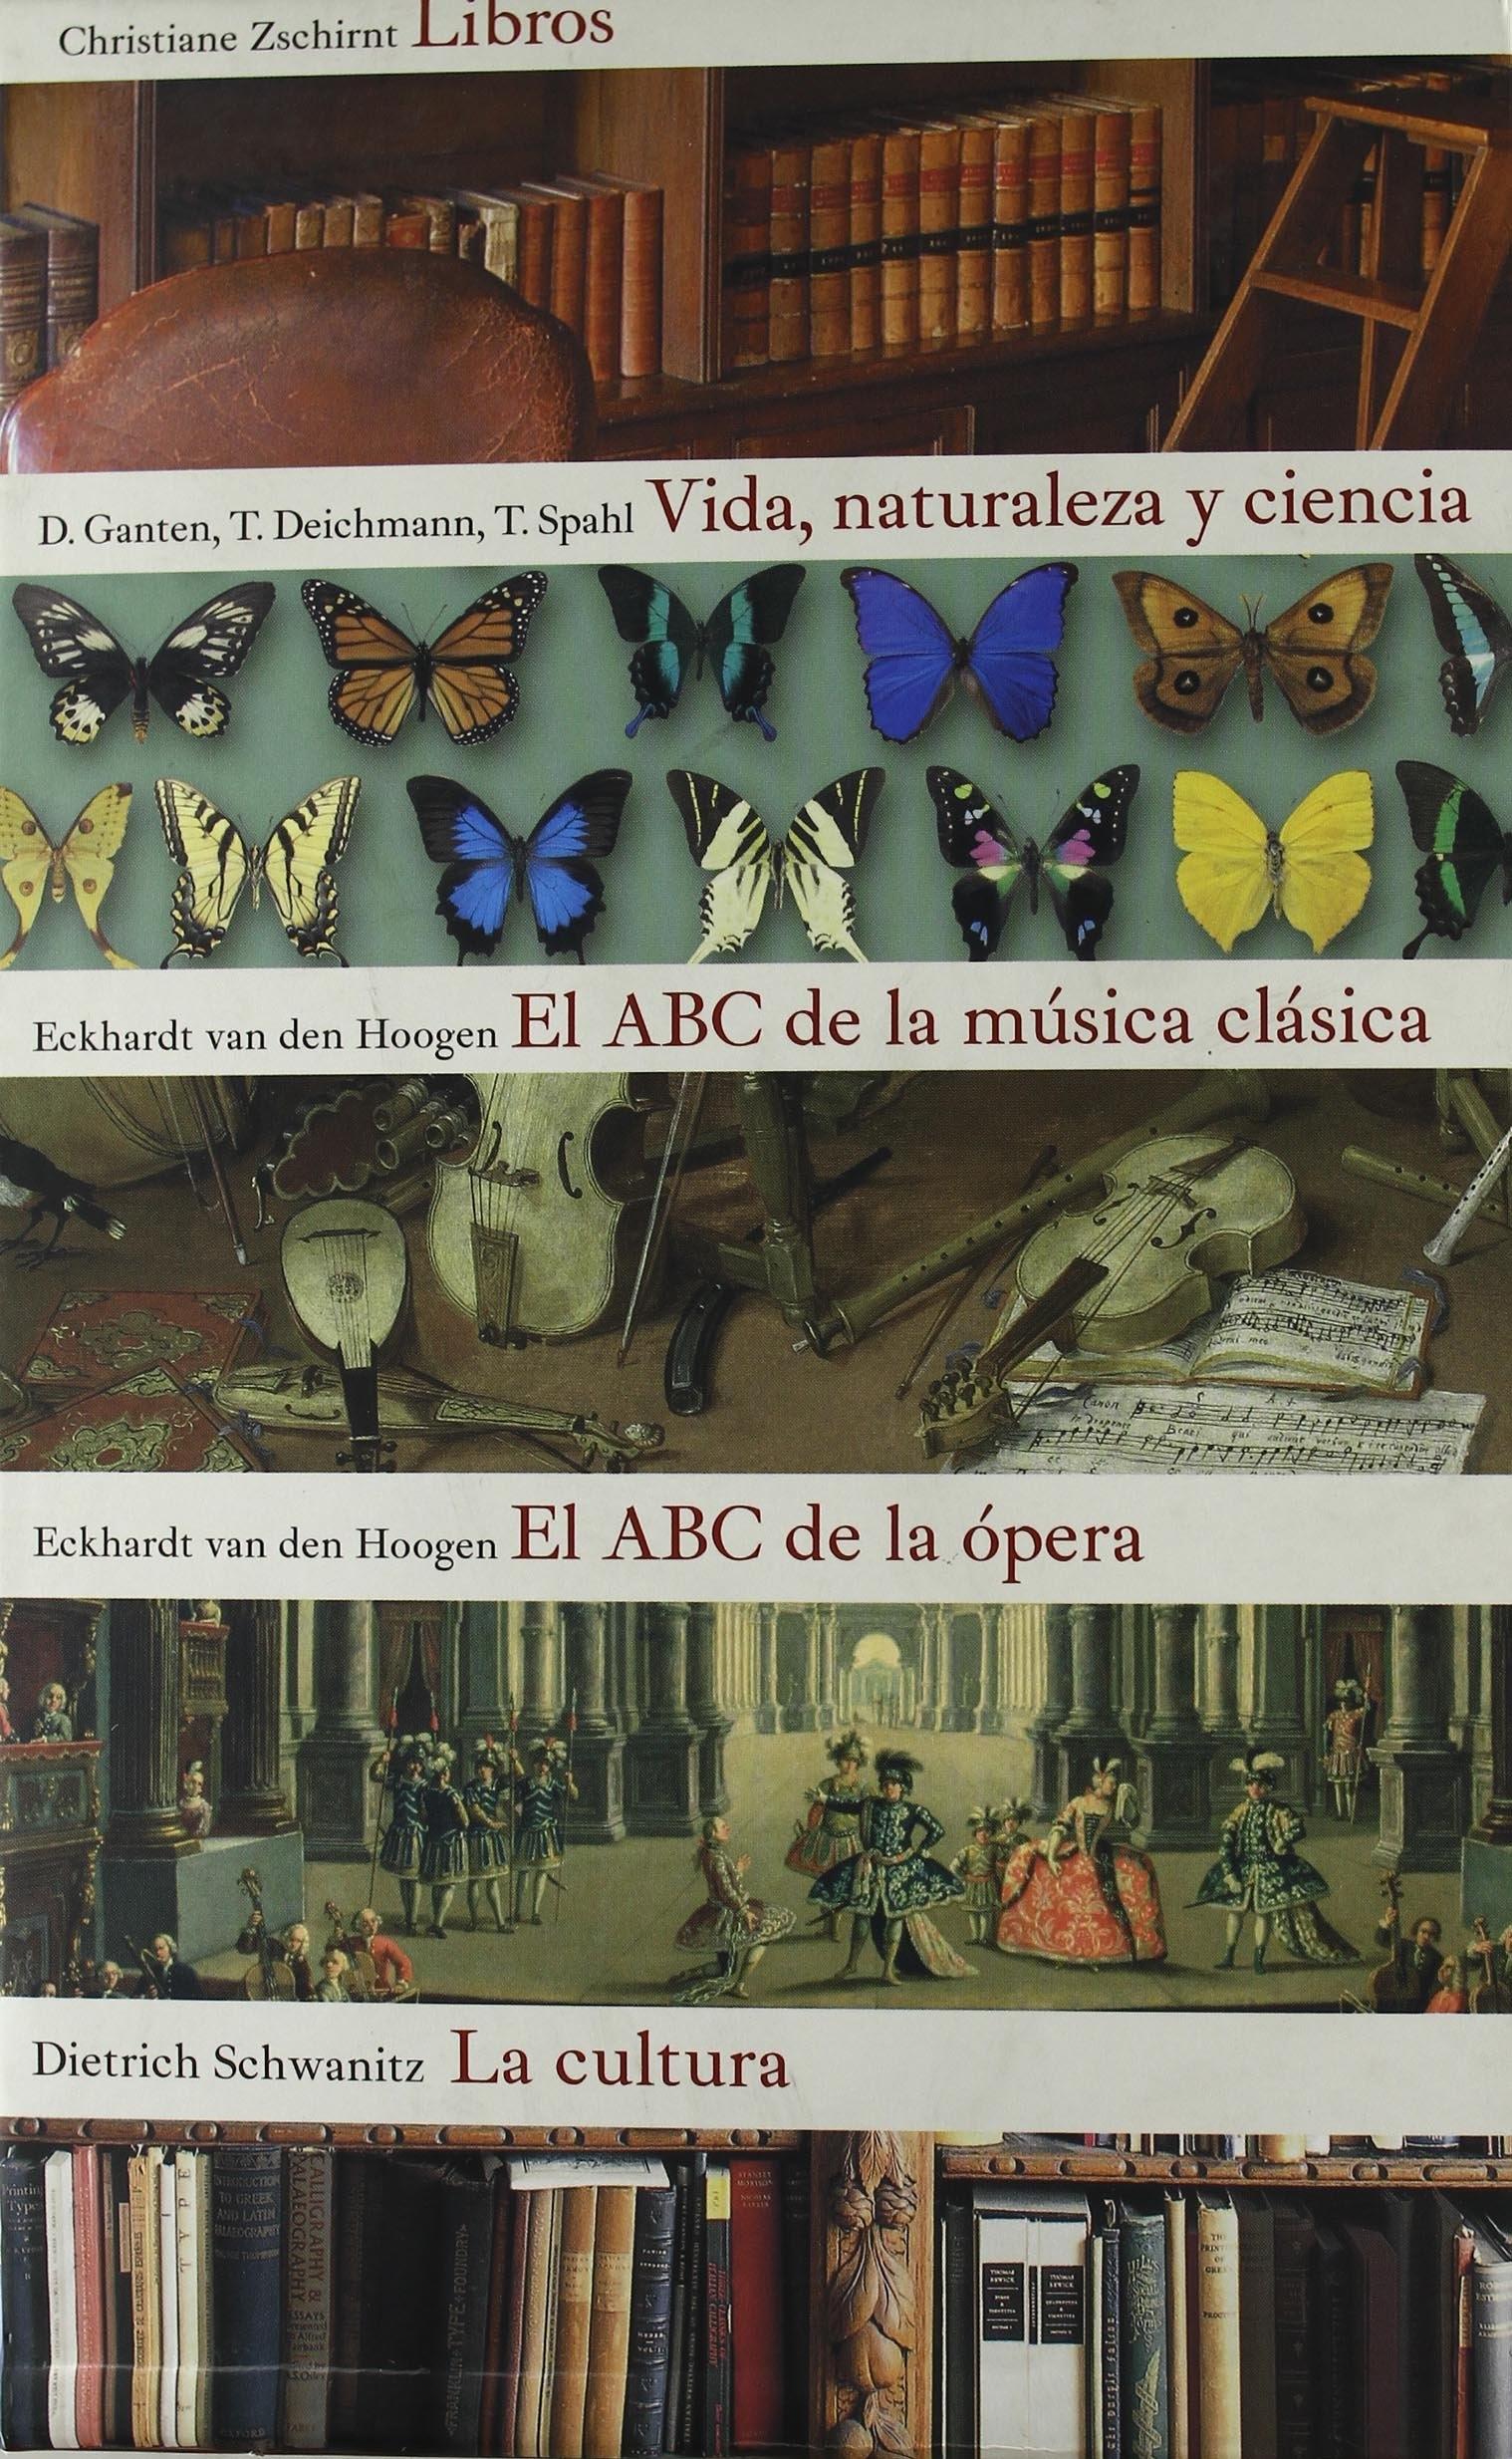 Todo lo que hay que saber (Estuche 5 Vols.) "La cultura / Libros / Vida, naturaleza y ciencia / El ABC de la música clásica / El ABC de la ópera"